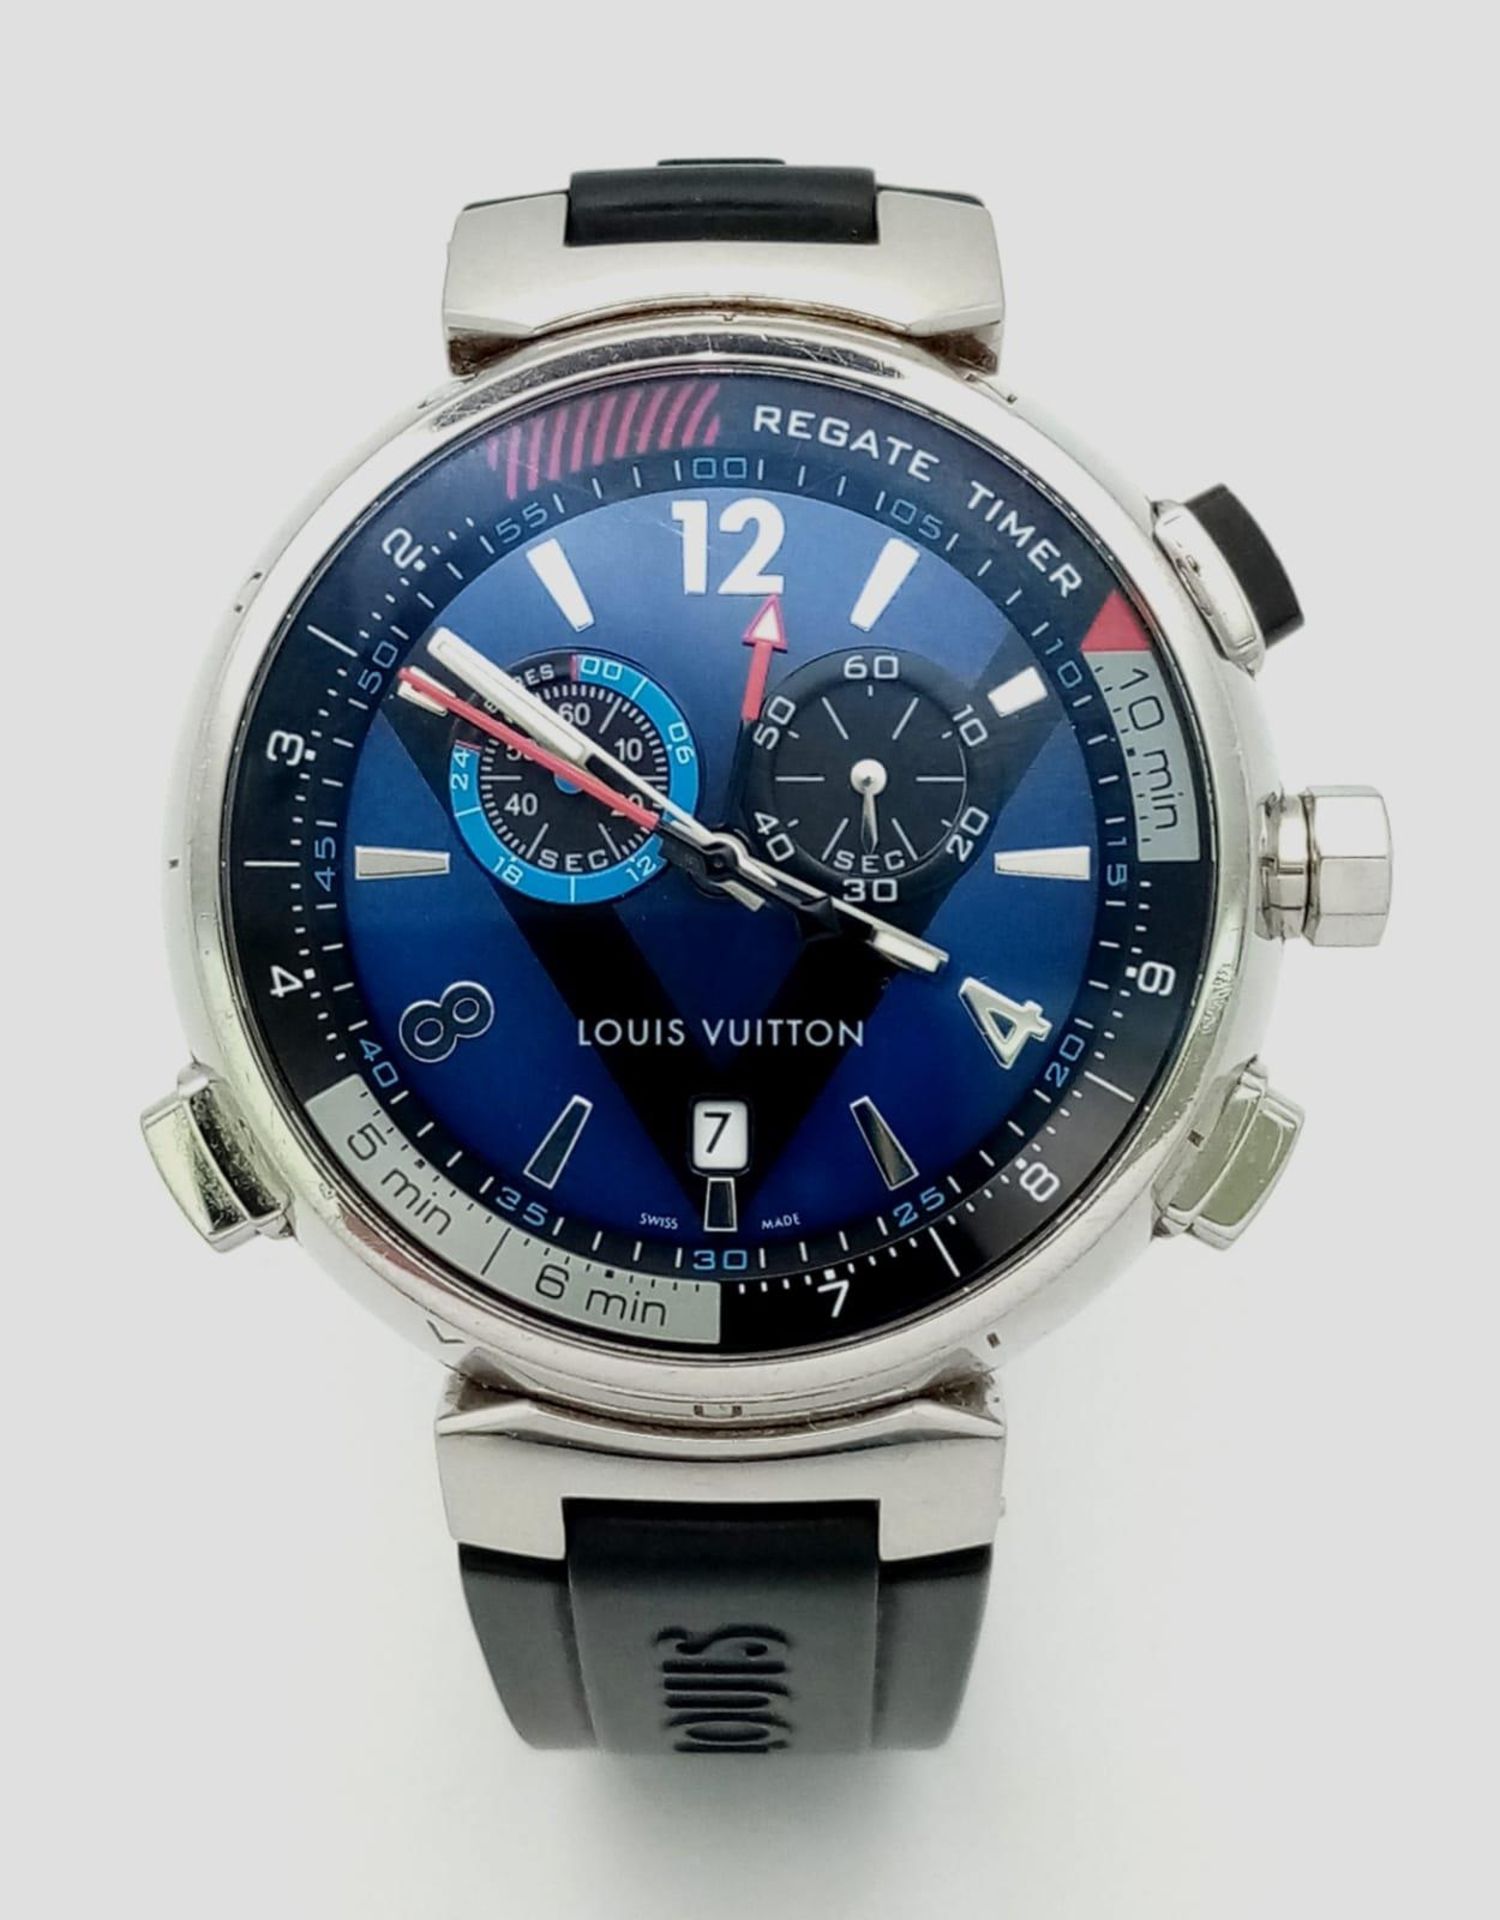 A Louis Vuitton Tambour Regatta Navy Men's Quartz Chronograph Watch. Black LV rubber strap. - Image 2 of 17